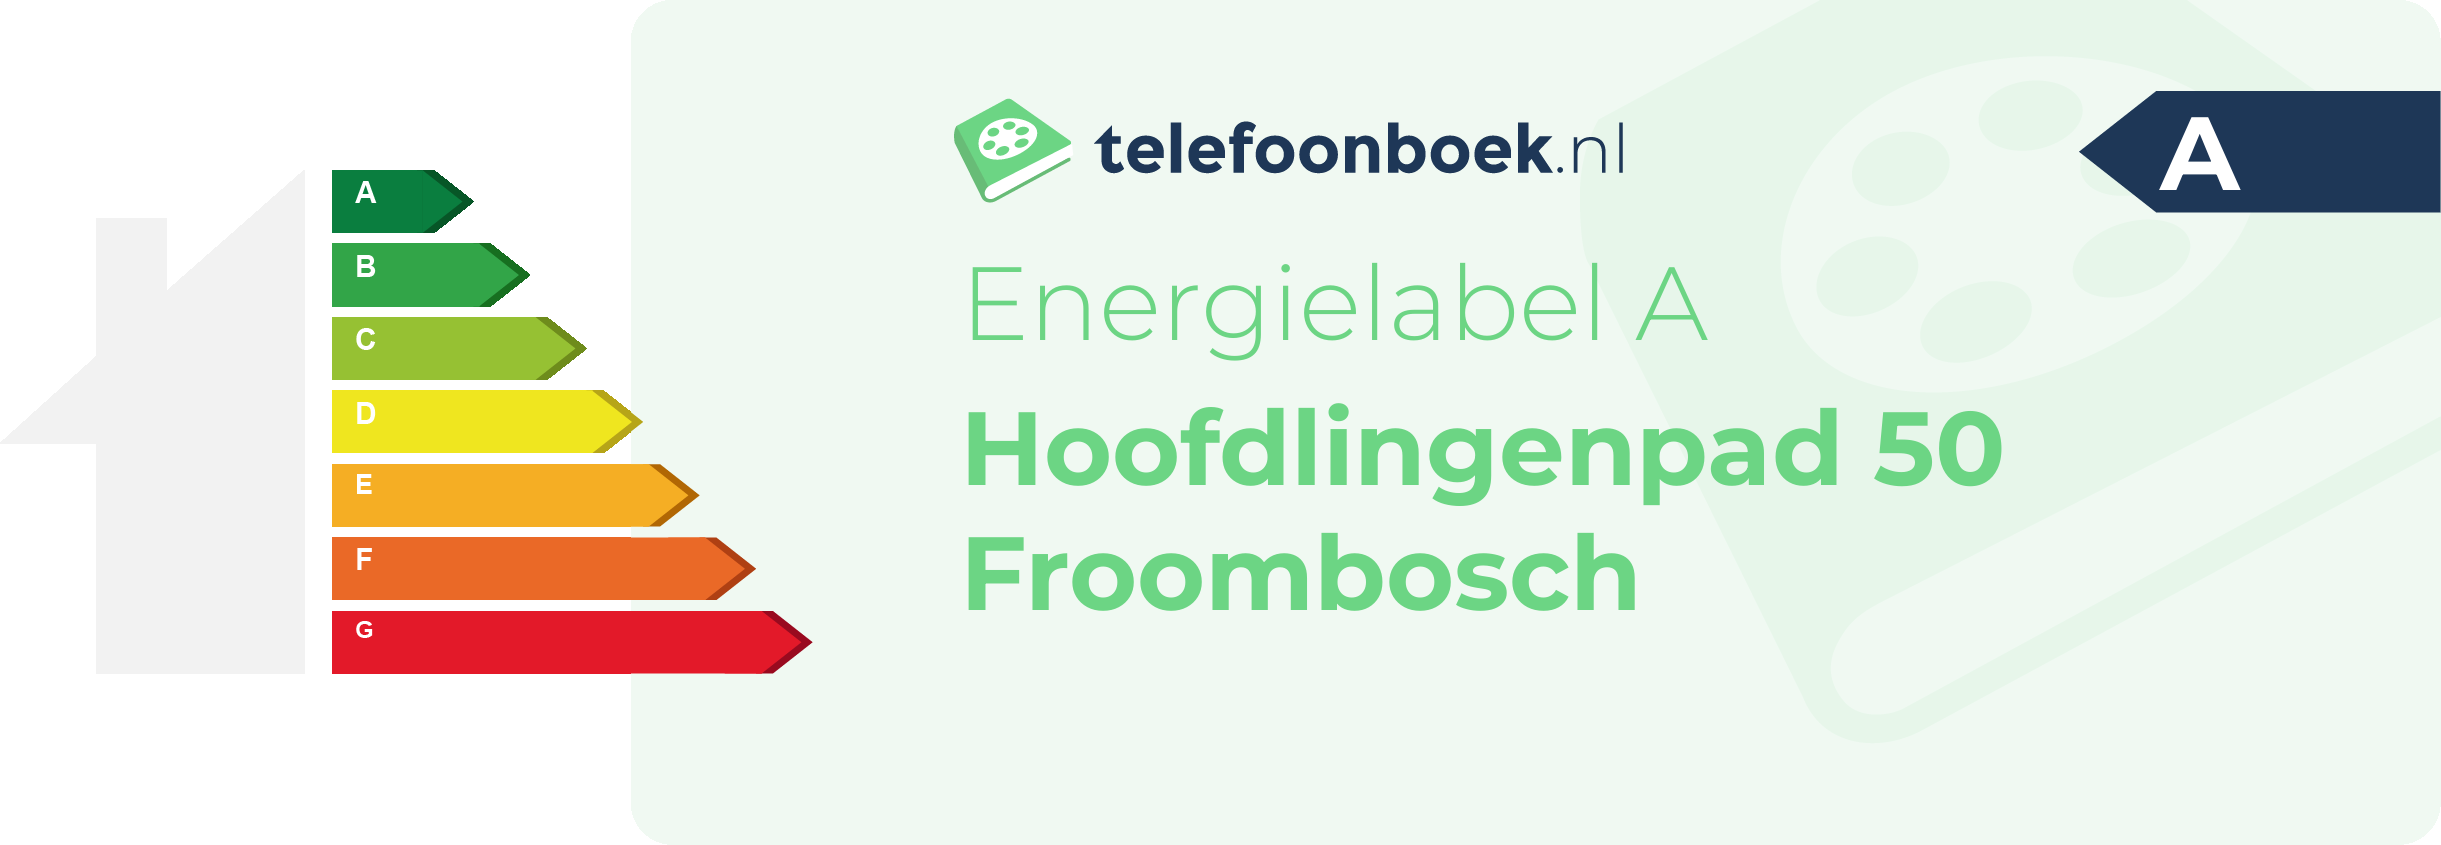 Energielabel Hoofdlingenpad 50 Froombosch